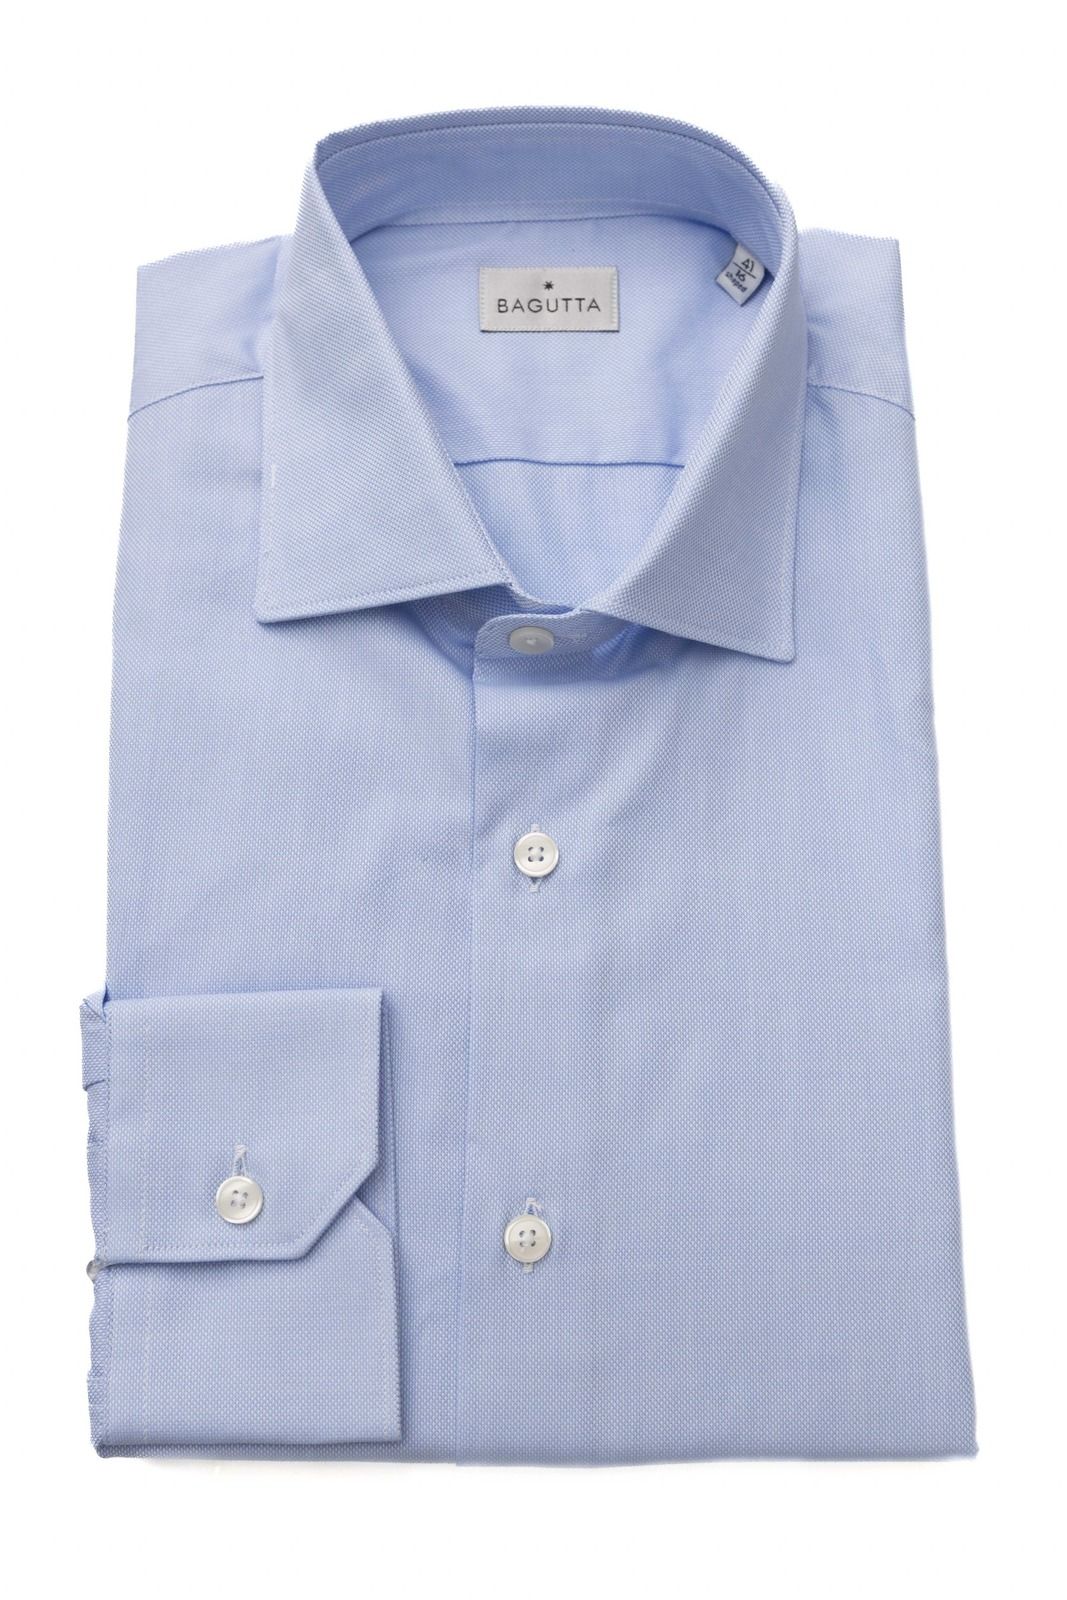 Košile Bagutta 11509 MIAMI_E Barva: Modrá, Velikost: 40